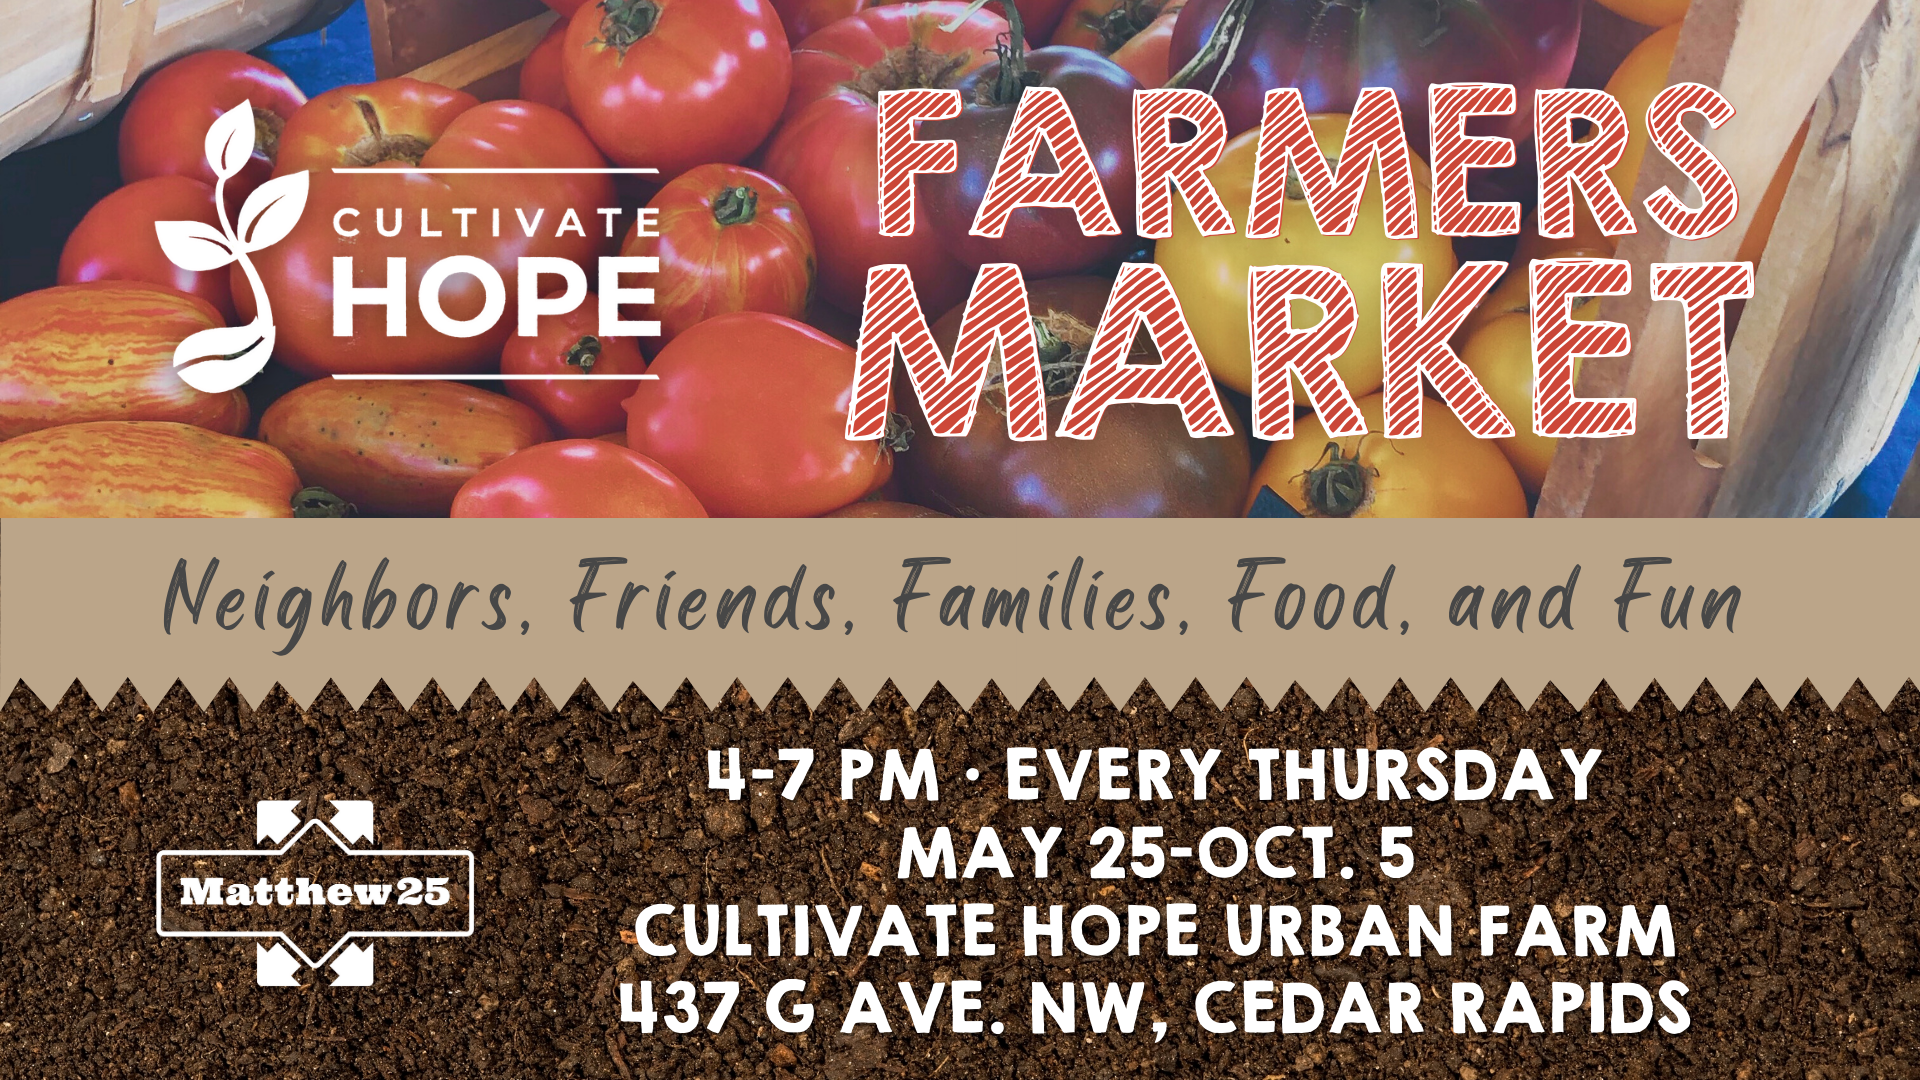 Farmers Markets at Cultivate Hope Urban Farm